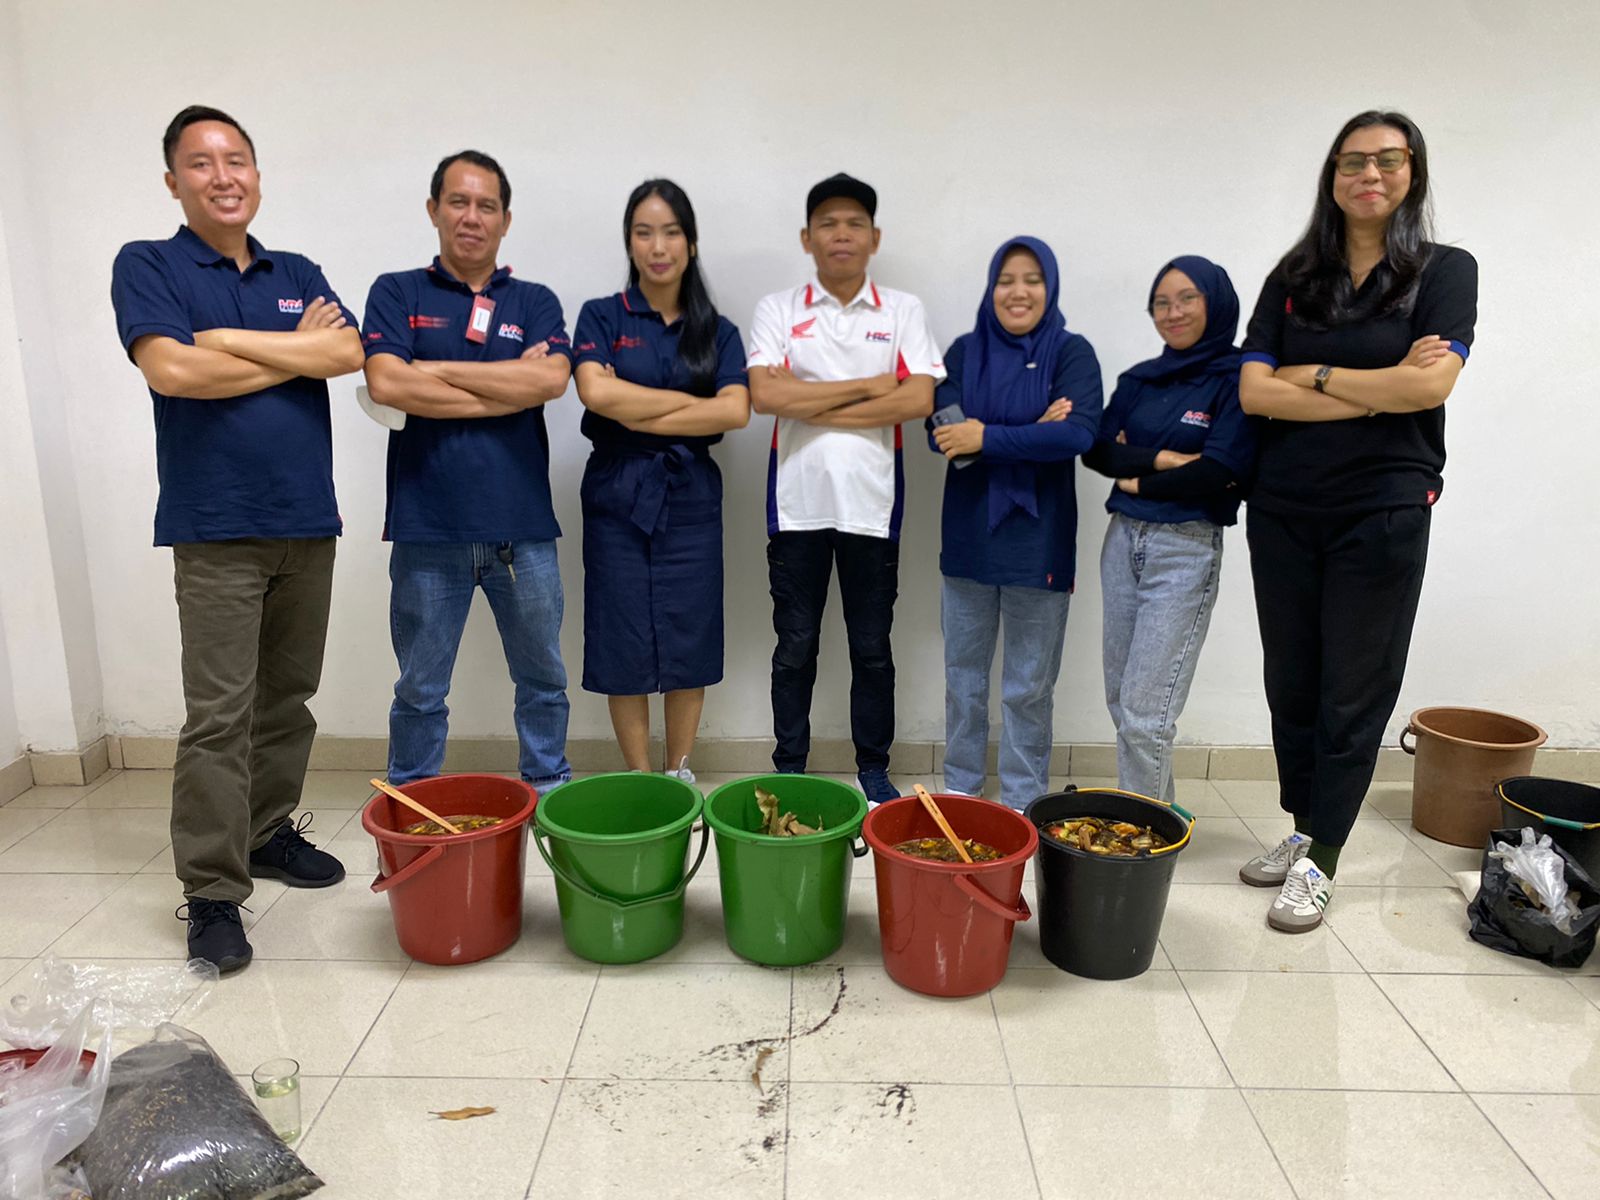 Bersama Astra Motor Bengkulu, Jurnalis Bengkulu Belajar Mengolah Sampah Lewat Program Green Kalcer